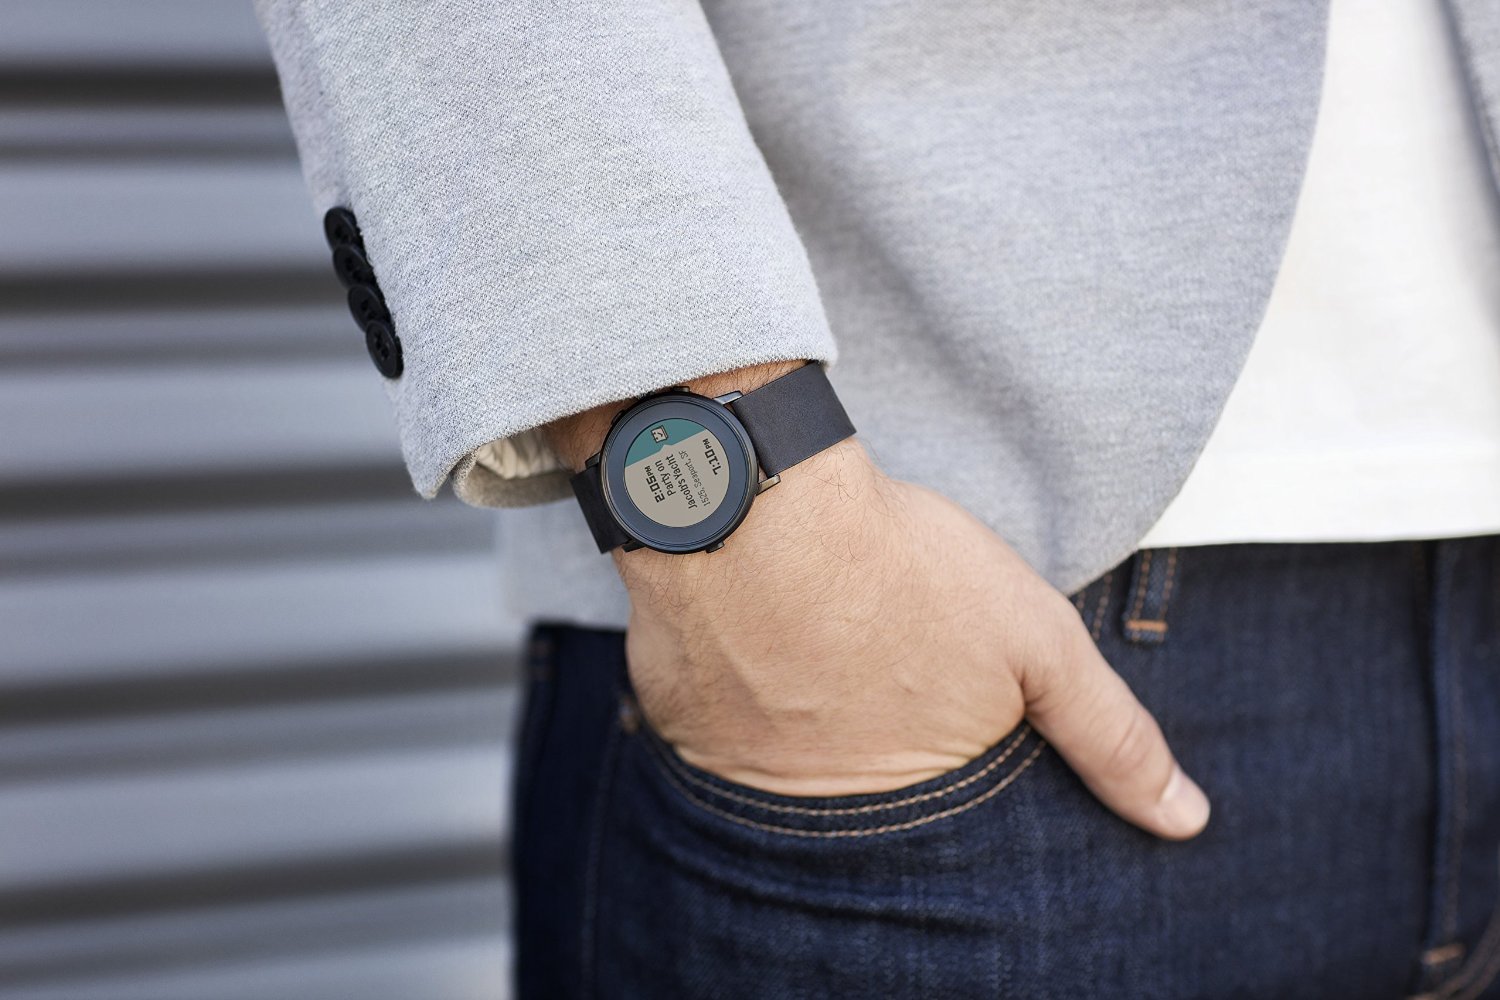 fitbit pebble smartwatch dtdeals watch